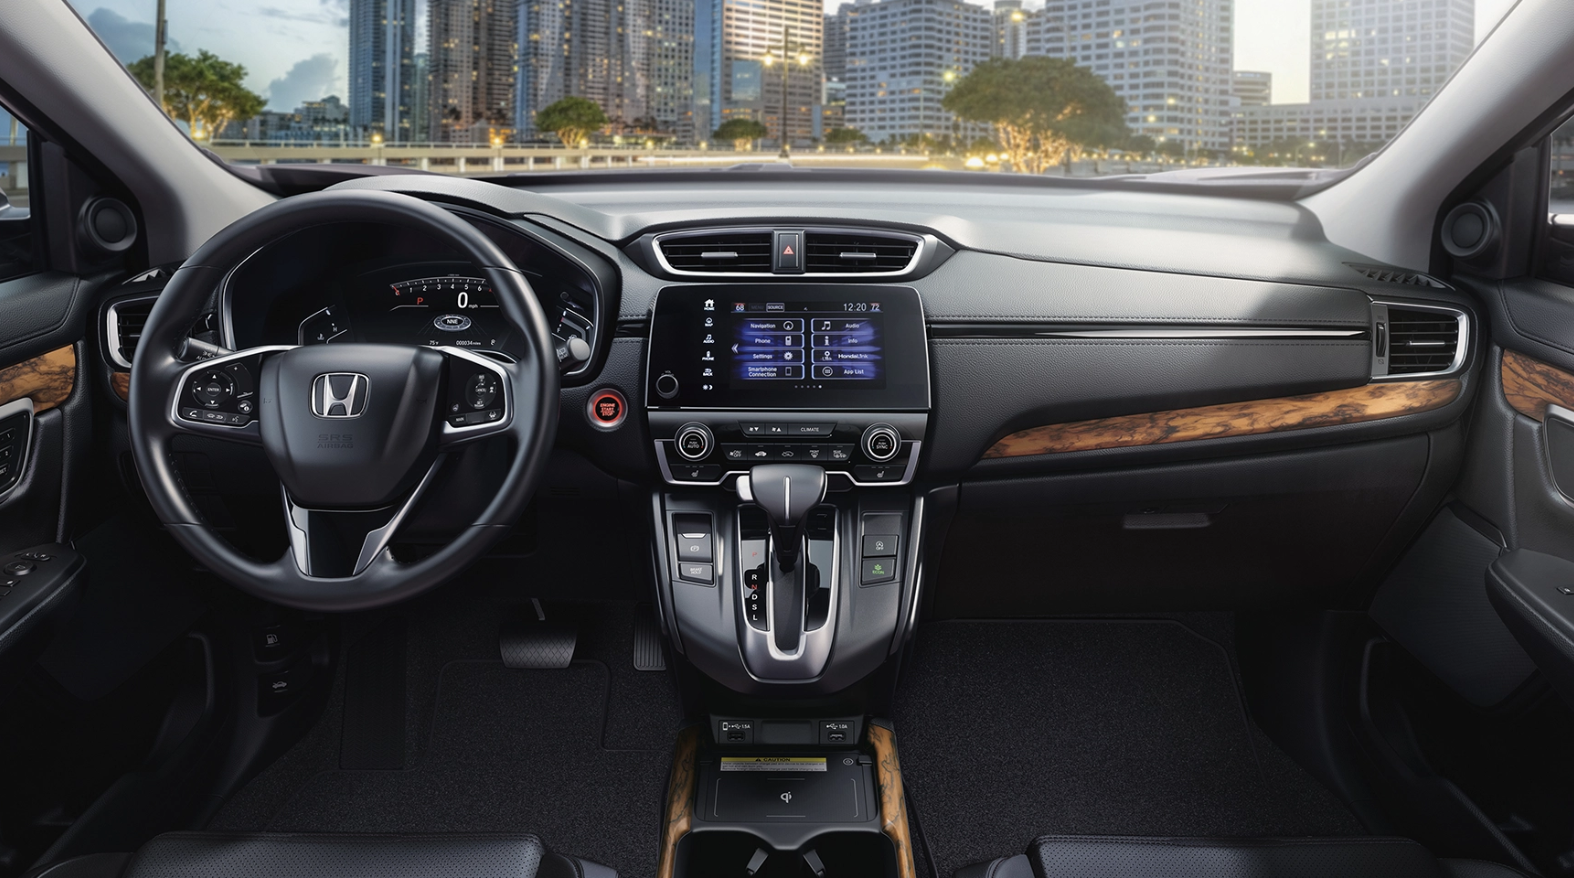 Honda CR-V usagé vs Mazda CX-5 usagé: plus d'espace et de puissance dans le CR-V